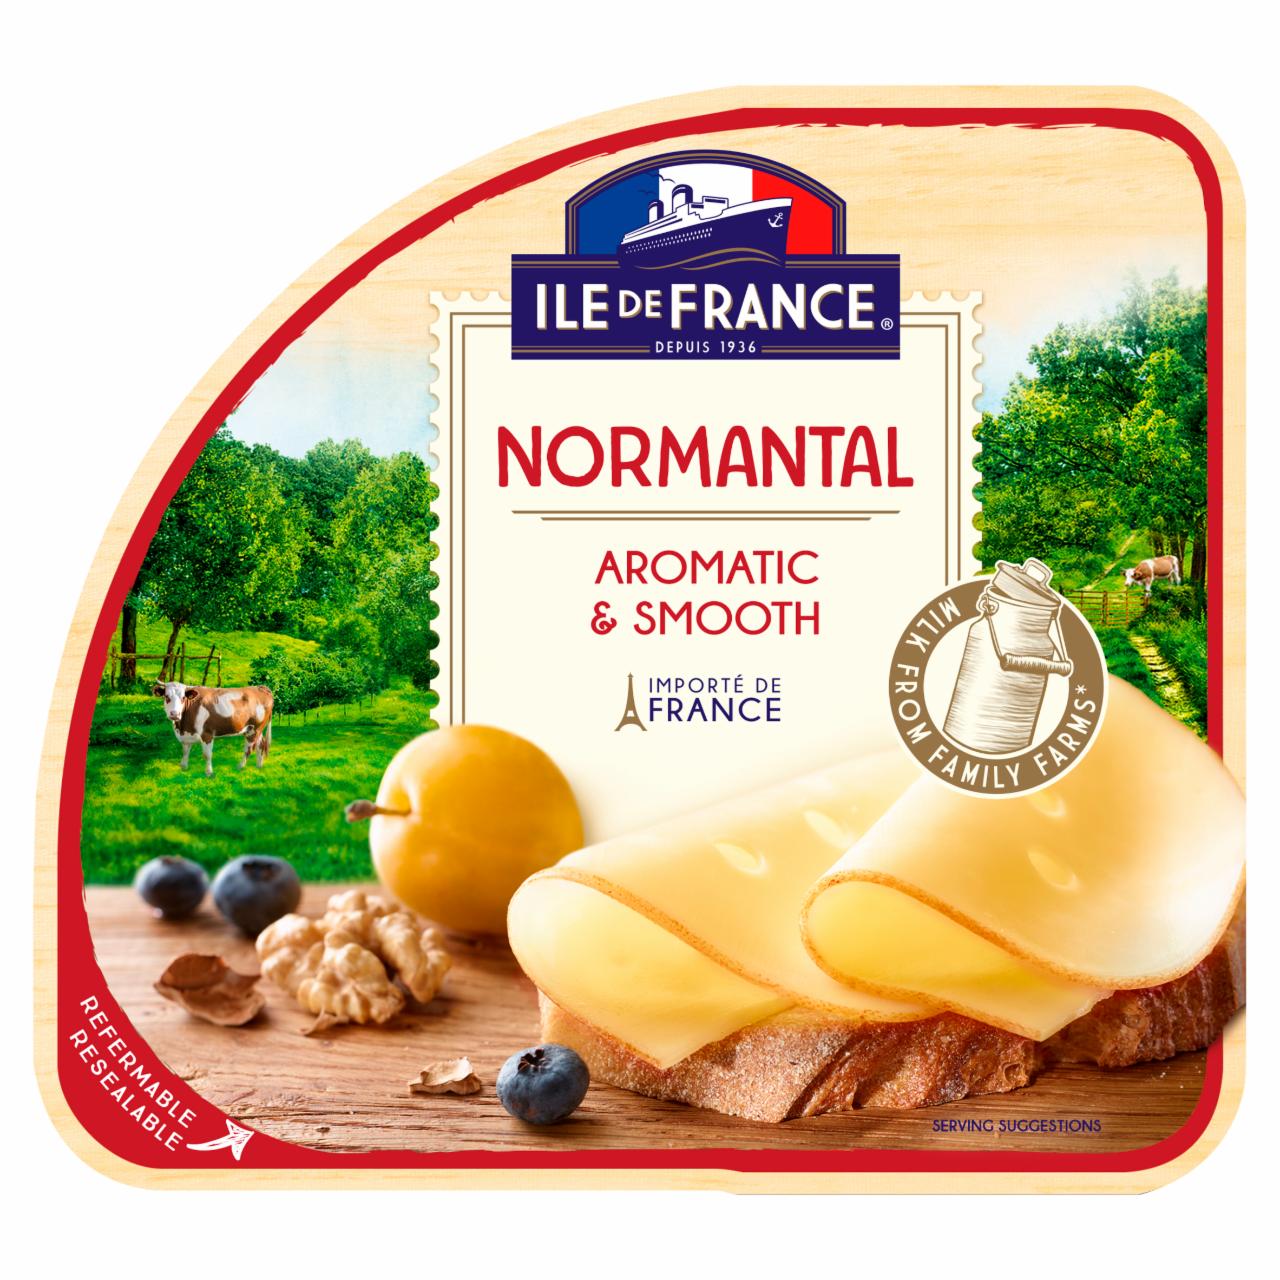 Képek - Ile de France Normantal szeletelt zsíros félkemény sajt 100 g